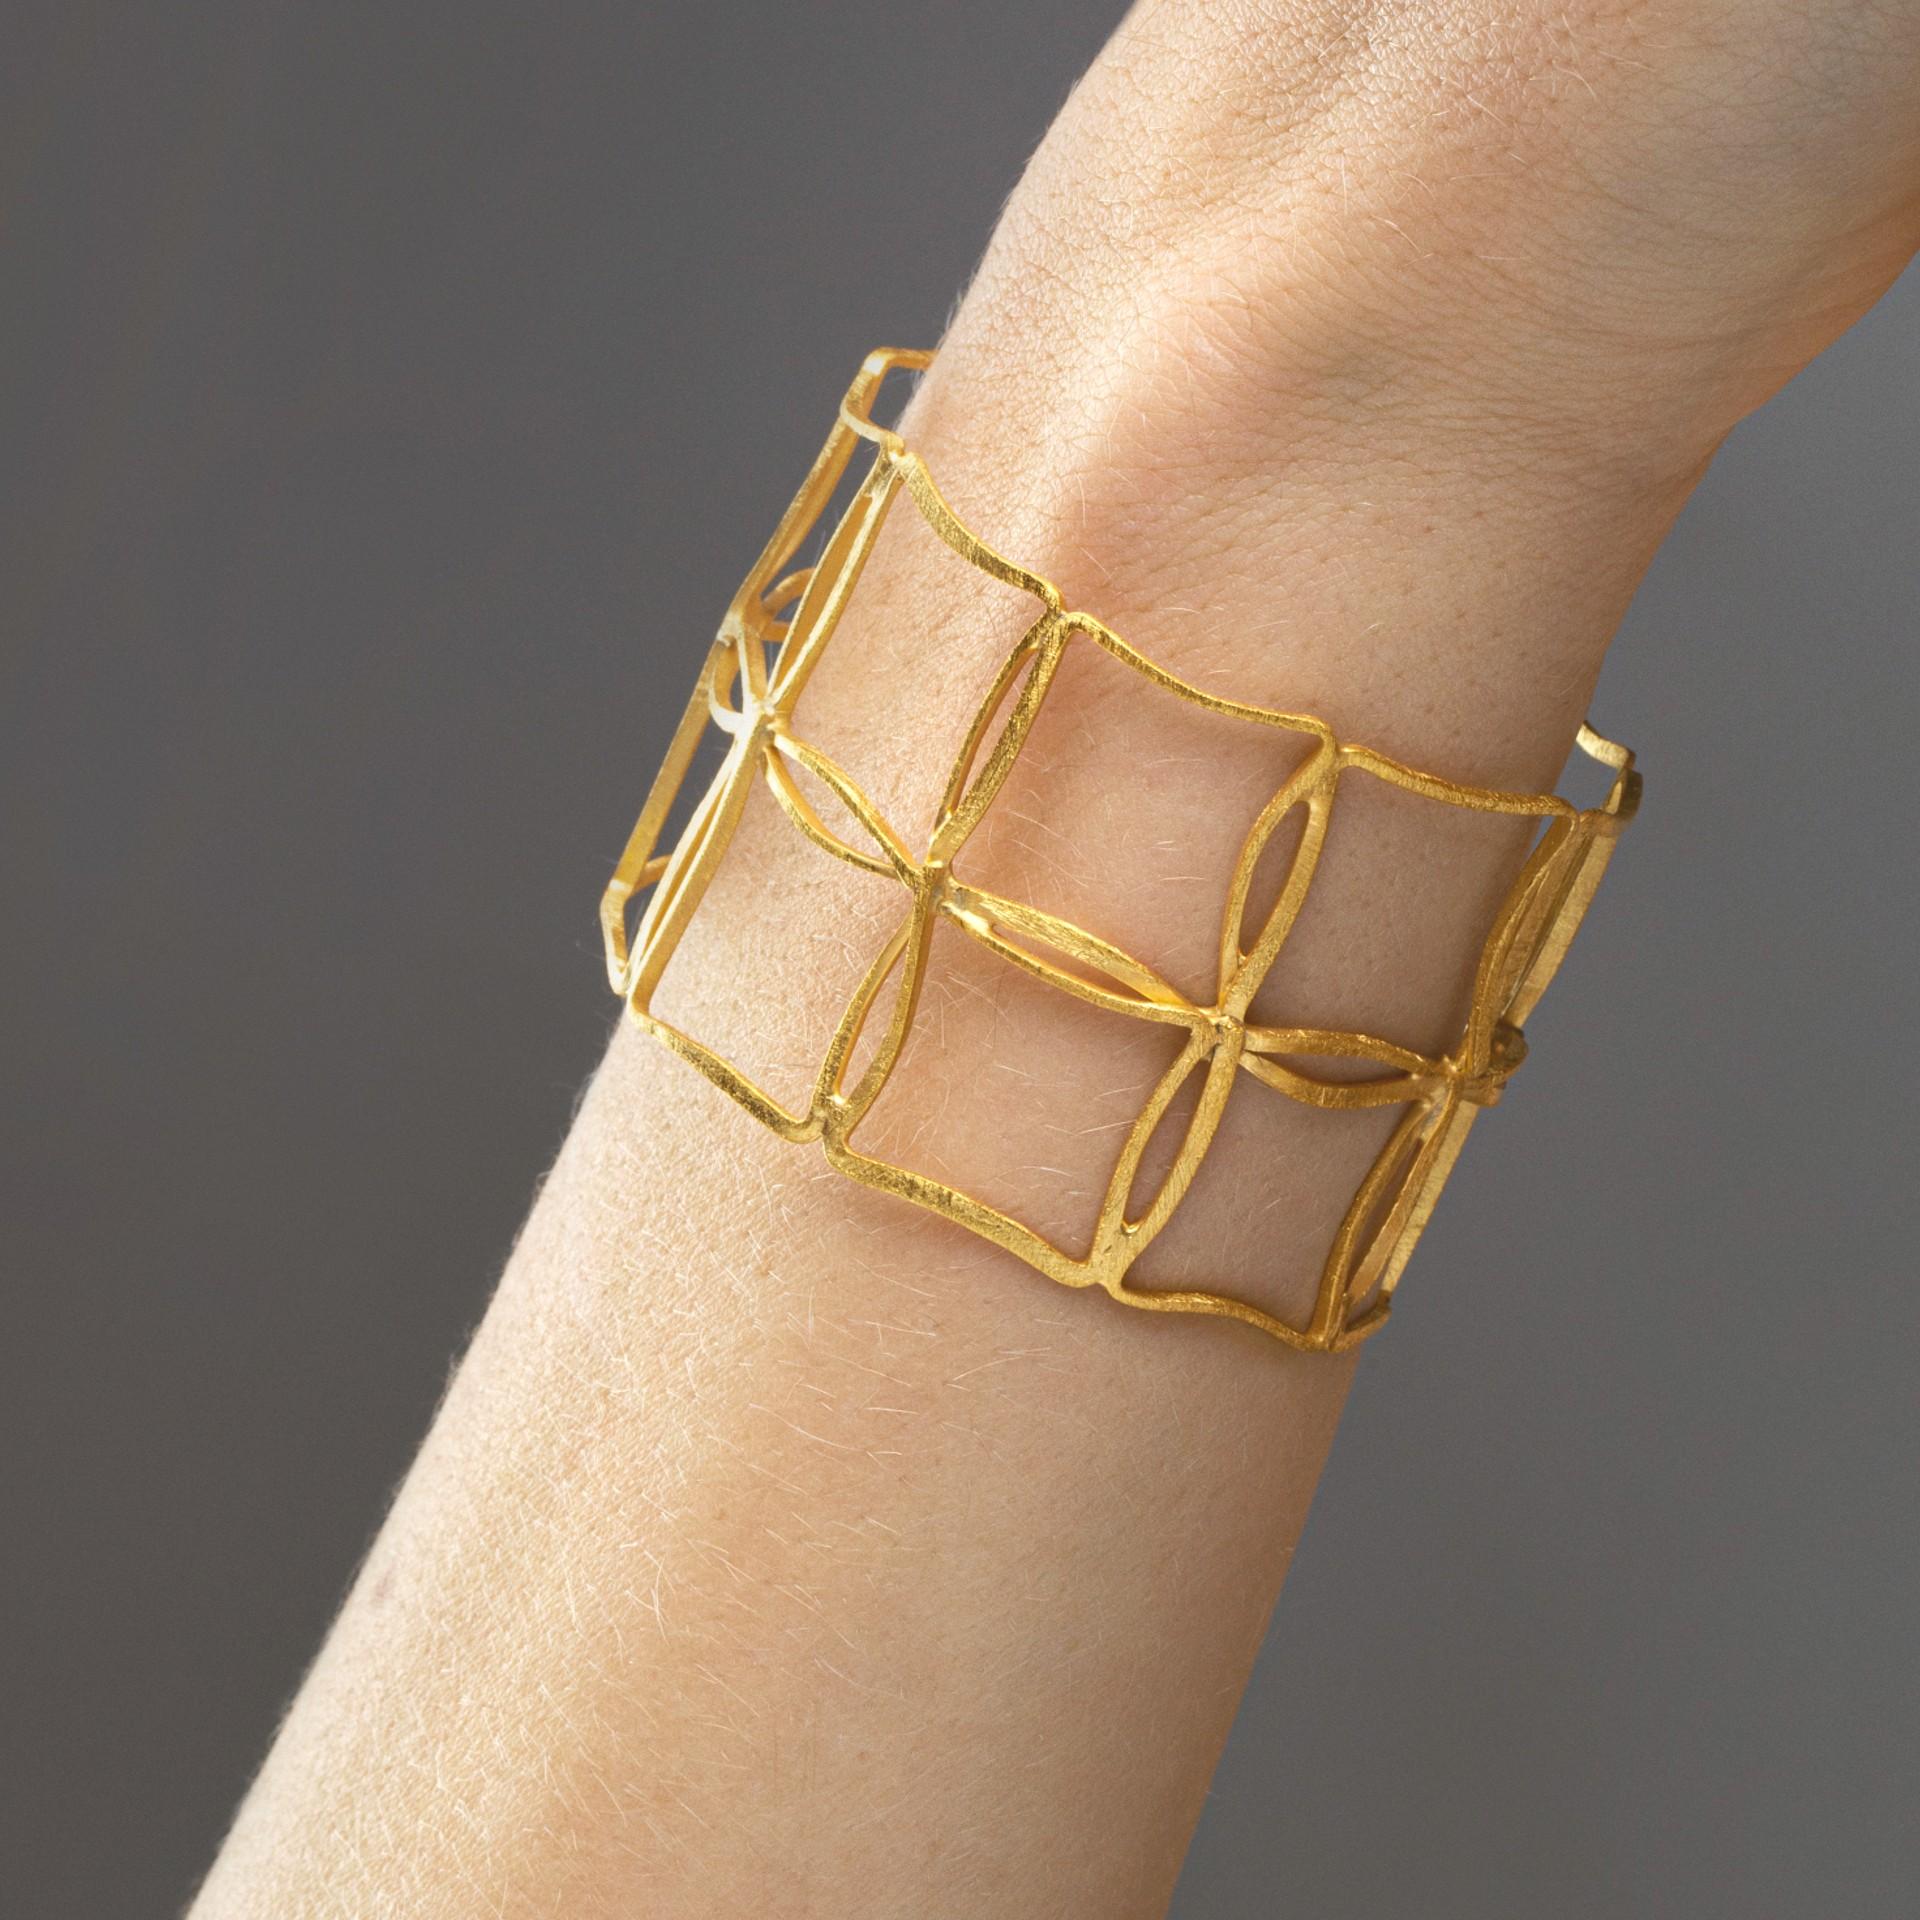 Alex Jona Design-Kollektion, handgefertigt in Italien, vergoldetes Sterlingsilber-Armband mit gebürsteter Oberfläche. 
Die Schmuckstücke von Alex Jona zeichnen sich dadurch aus, dass während des gesamten Herstellungsprozesses sorgfältig auf die